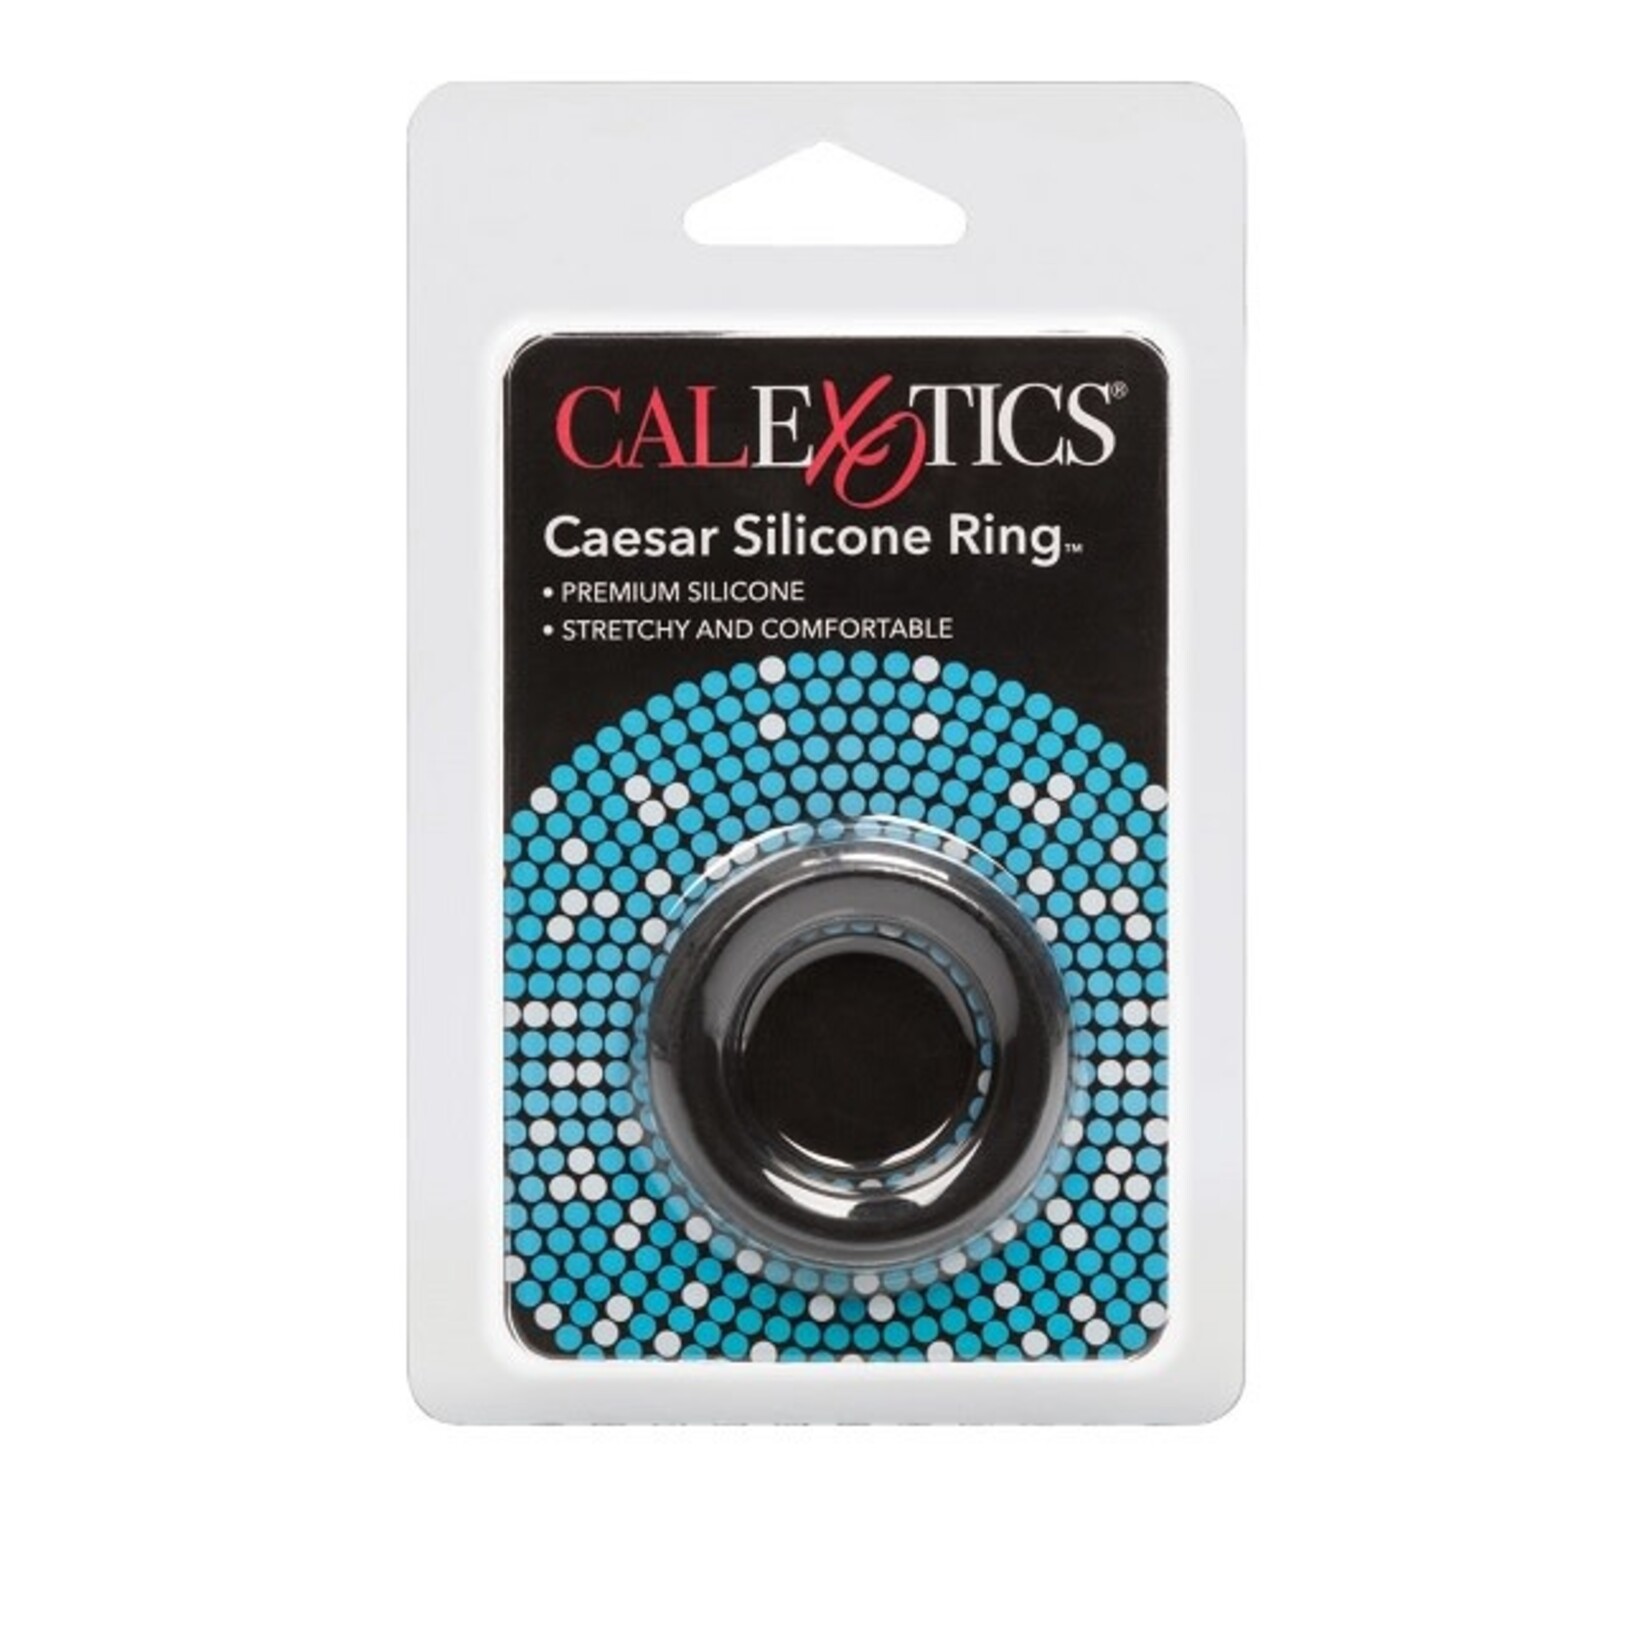 CalExotics Caesar Silicone Ring